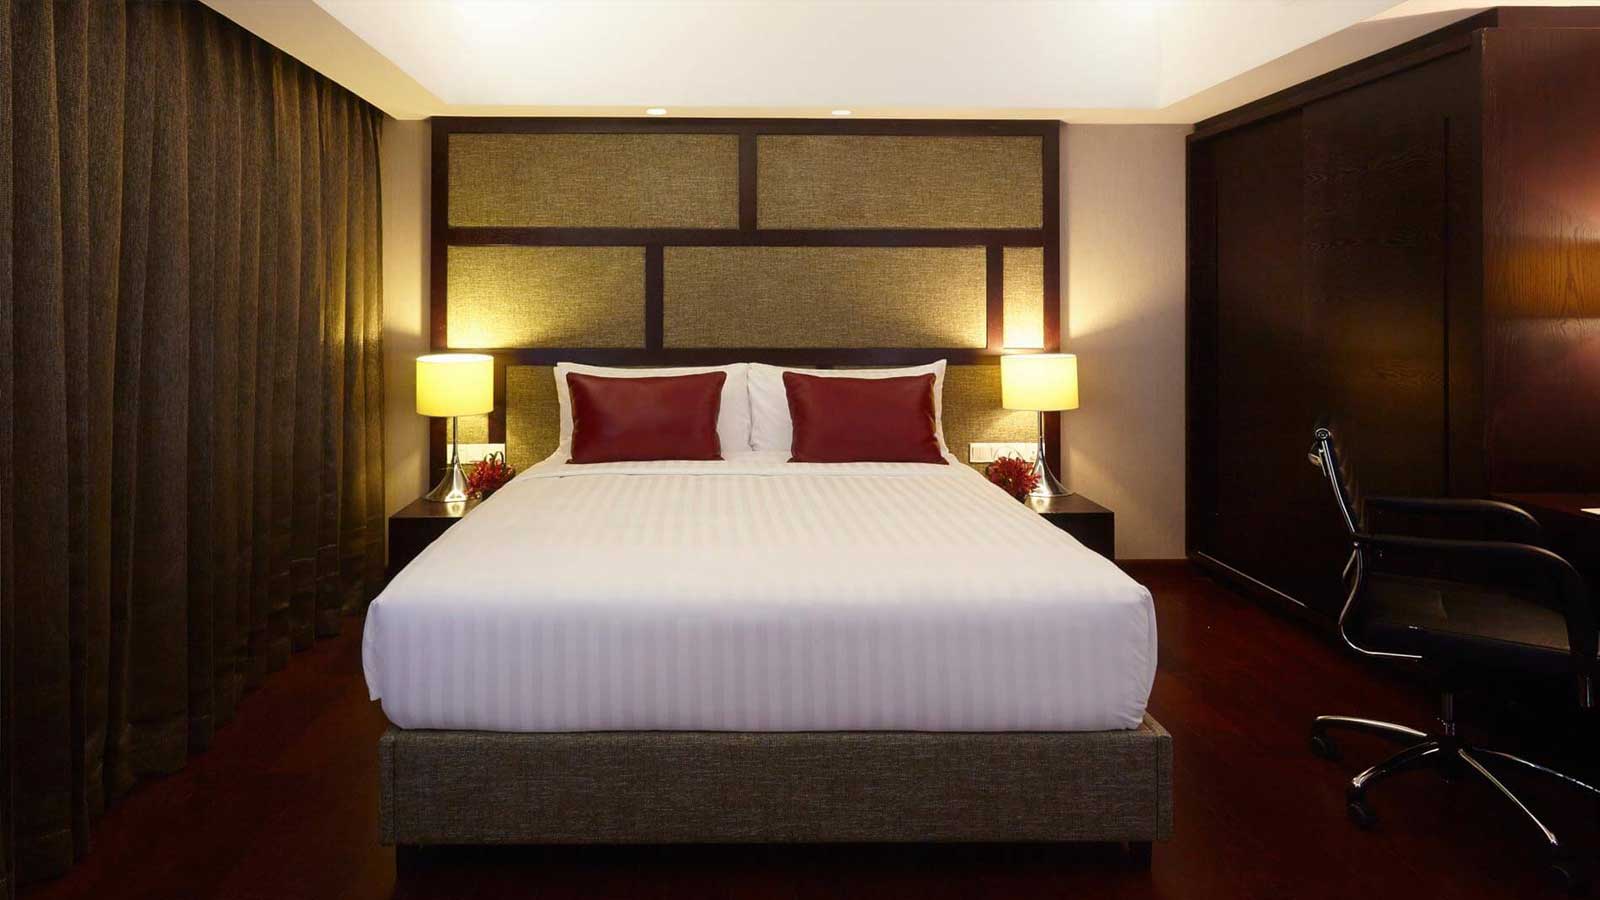 เตียงคิงไซส์ - ห้องสวีท เทอร์เรซ 1 ห้องนอน - โรงแรม อมารี ธากา บังคลาเทศ